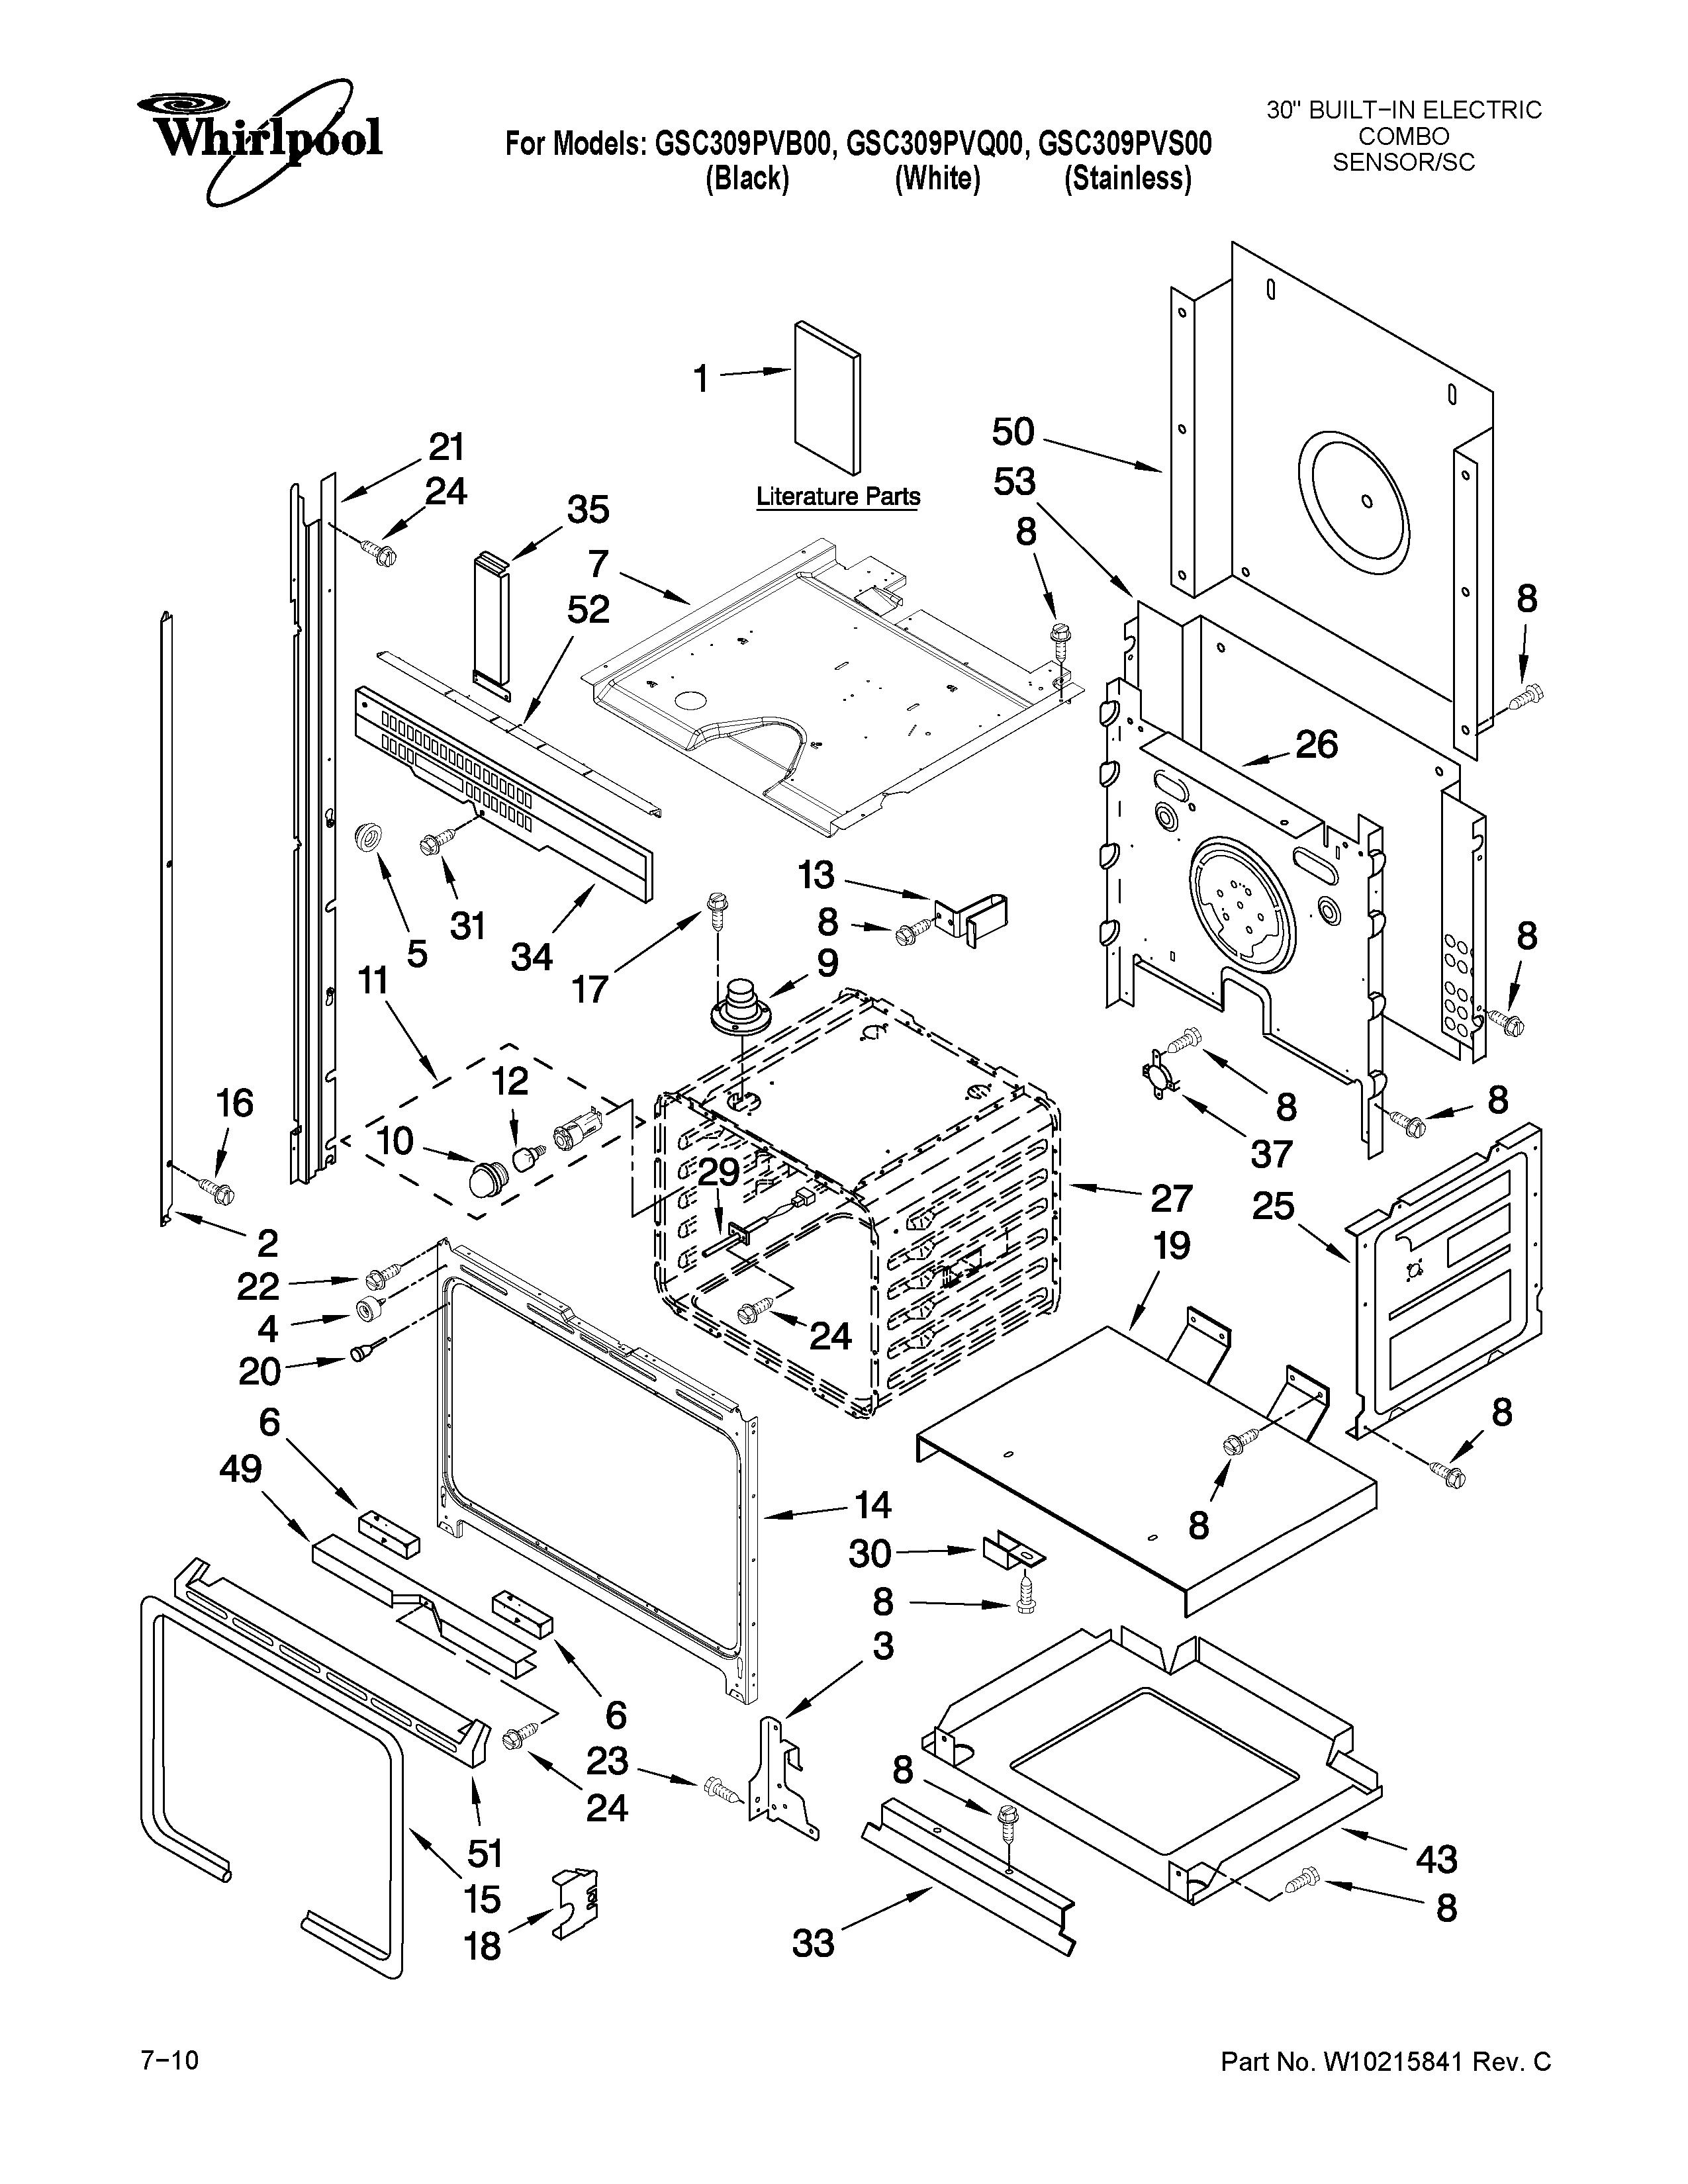 Whirlpool Microwave Parts Diagram - General Wiring Diagram